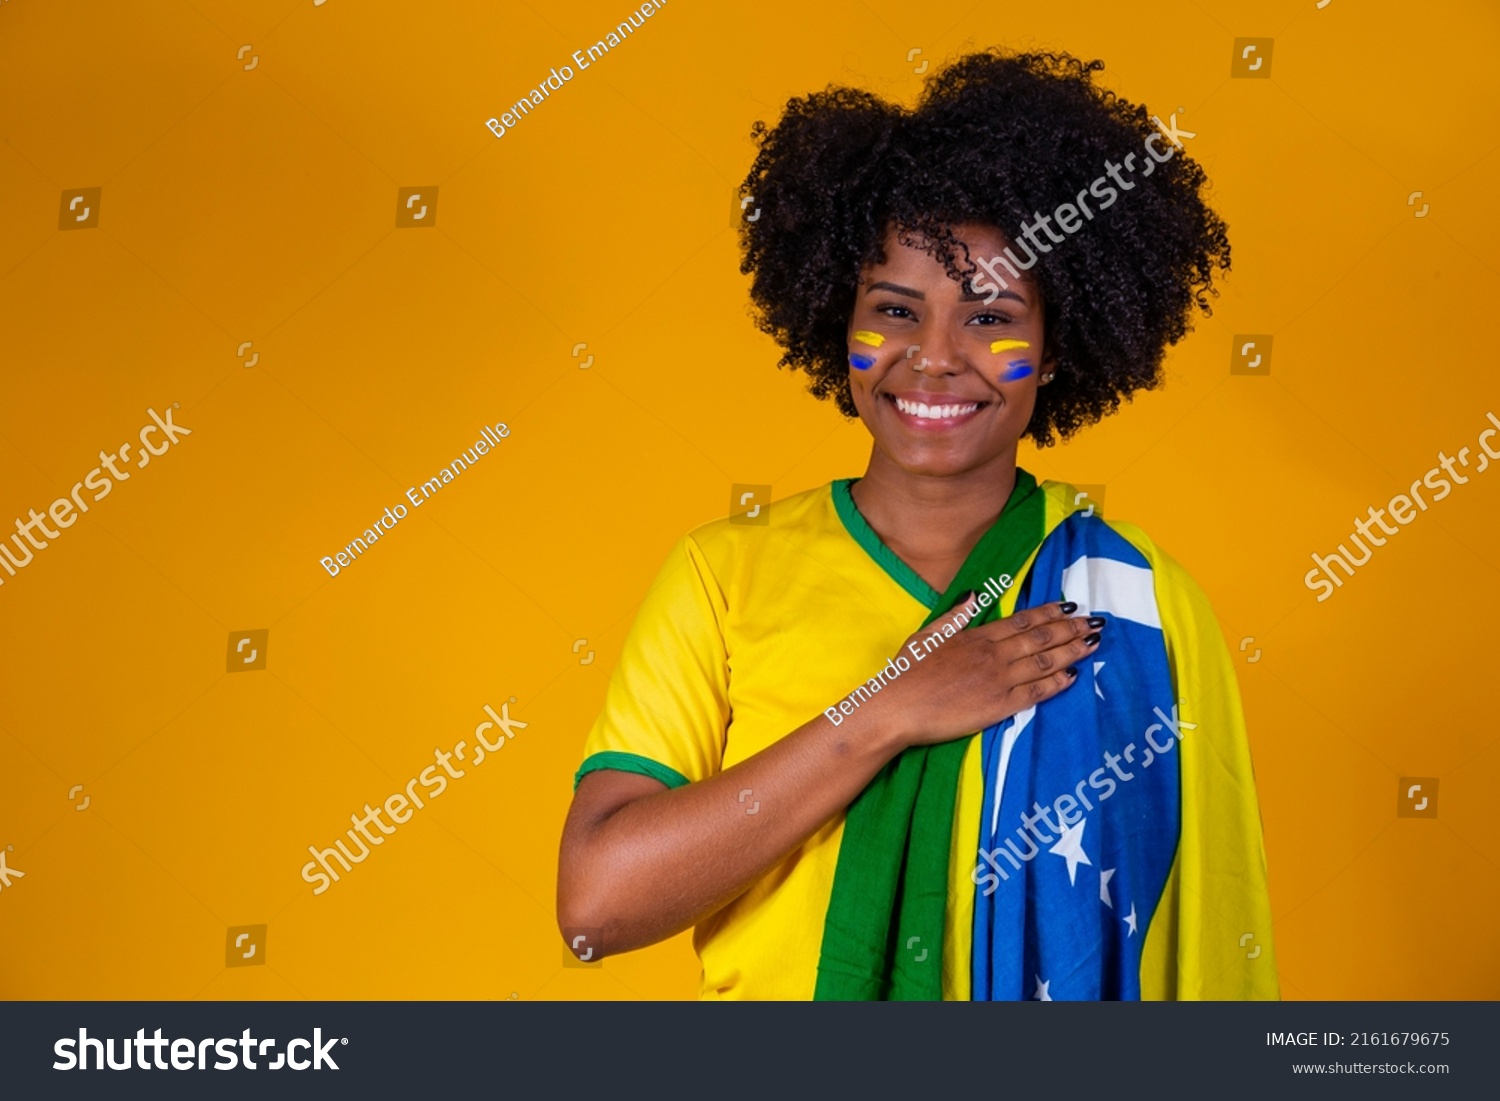 Brazilian fan. wearing Brazilian flag in a portrait, Brazilian fan celebrating football or soccer game on yellow background. Colors of Brazil.World Cup #2161679675